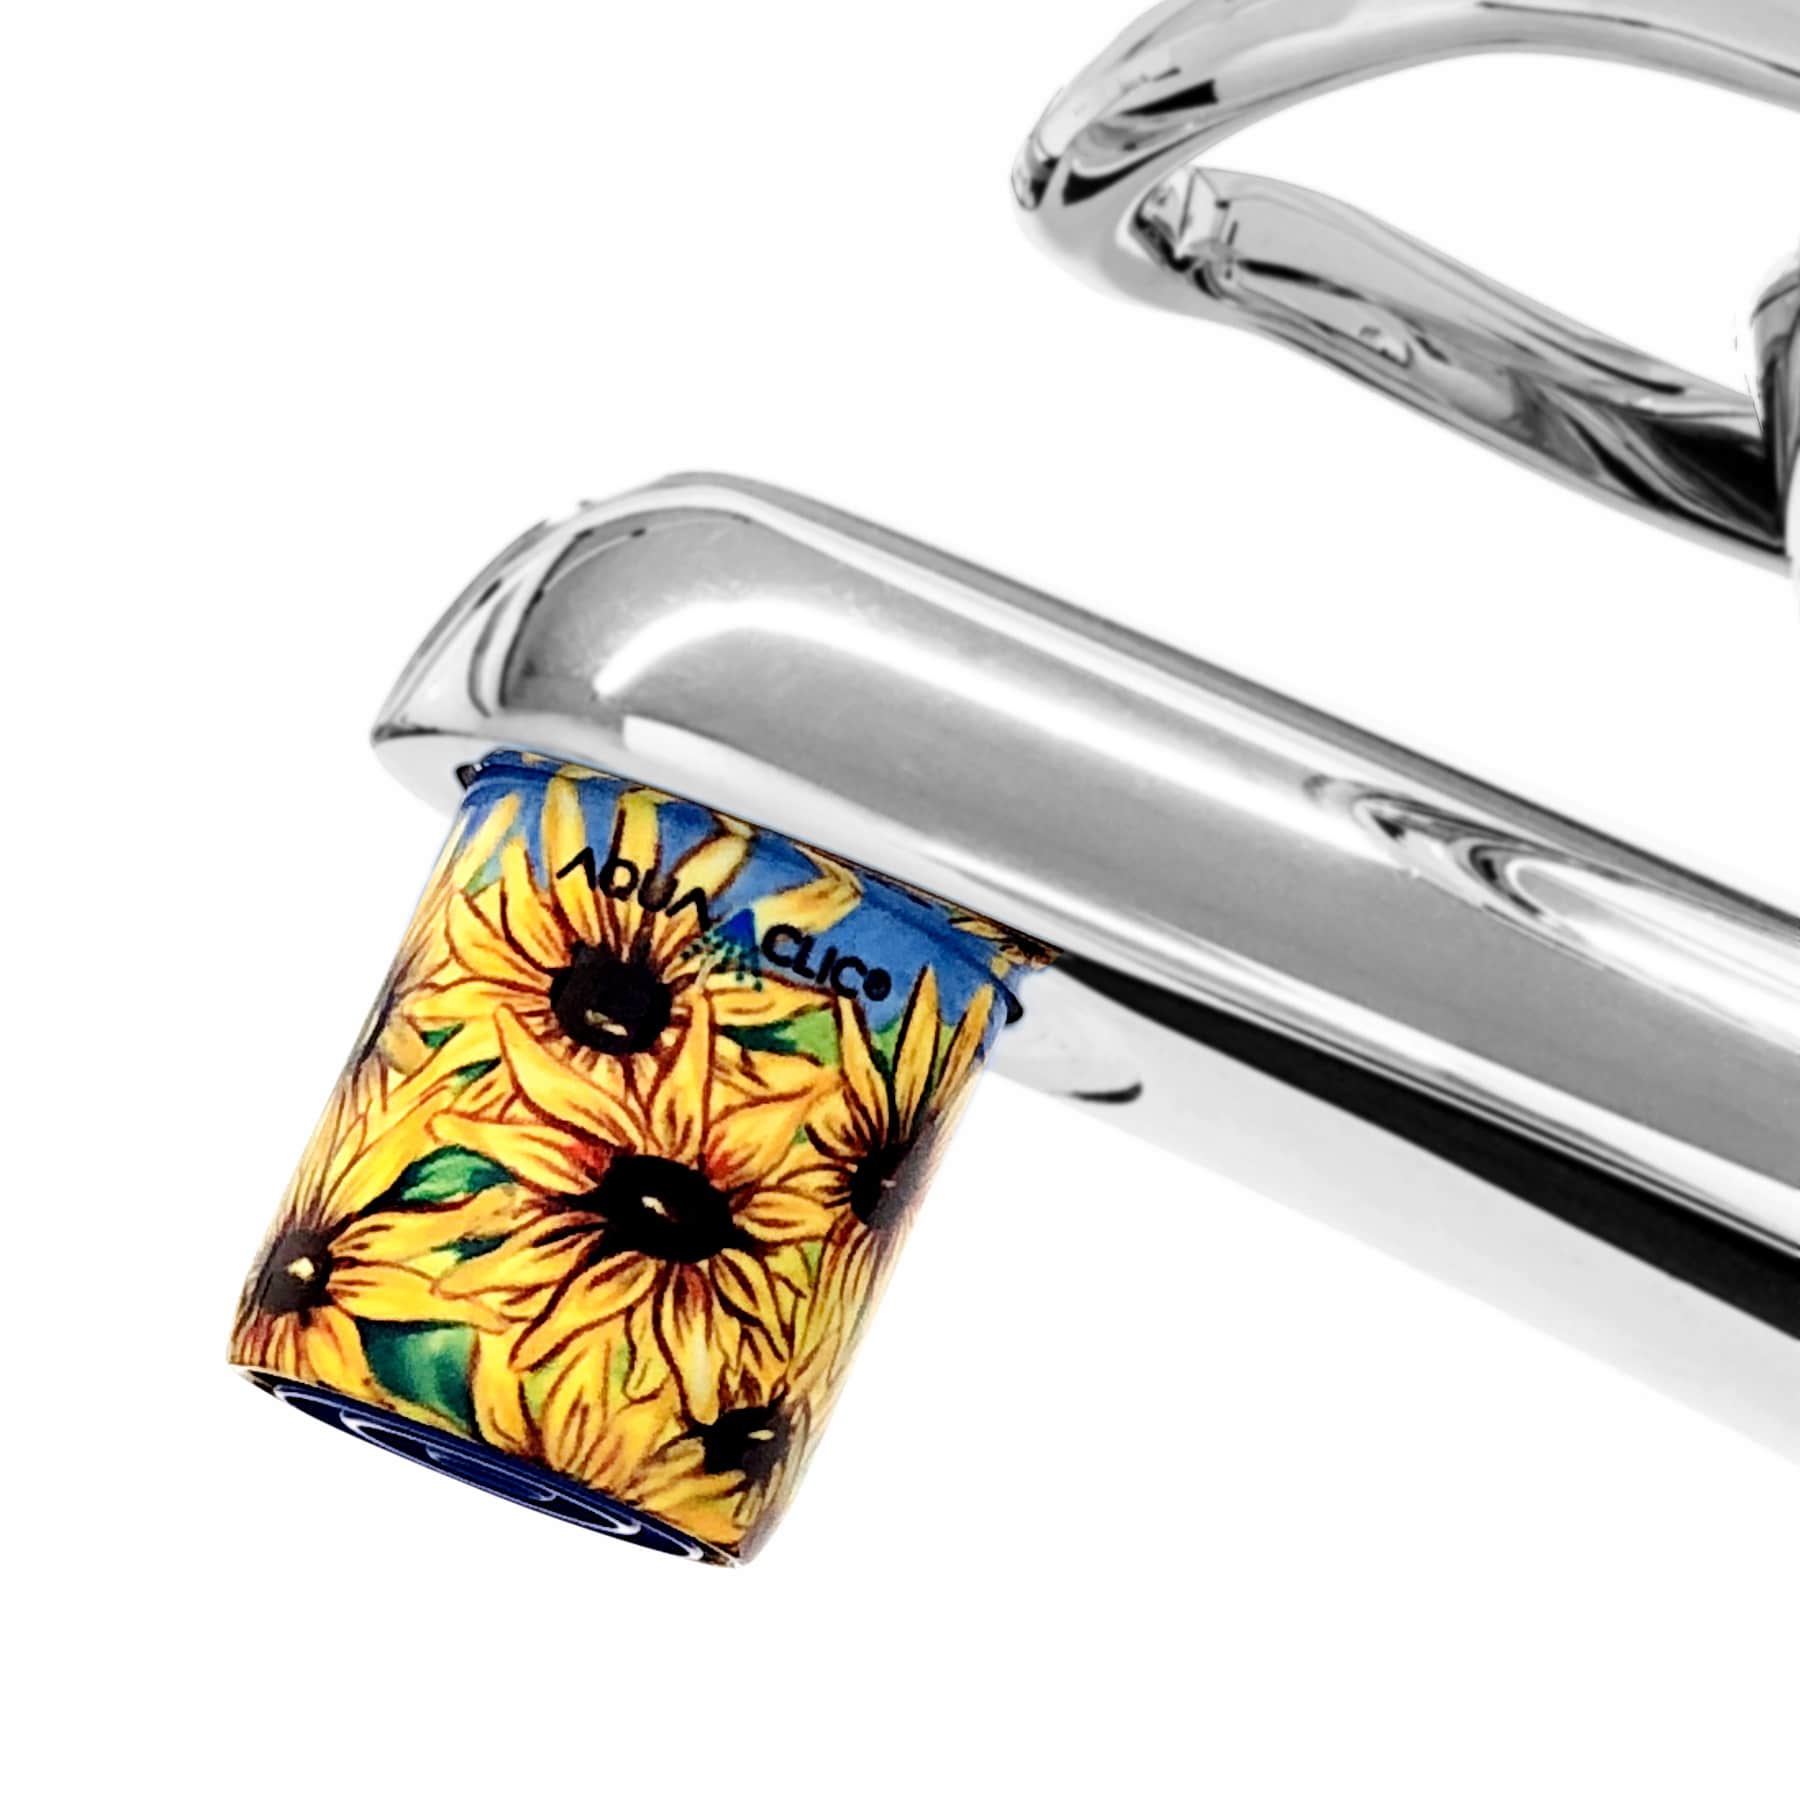 AquaClic-Strahlformer am Wasserhahn in  Sunflowers-Design: Schönheit und Effizienz vereint